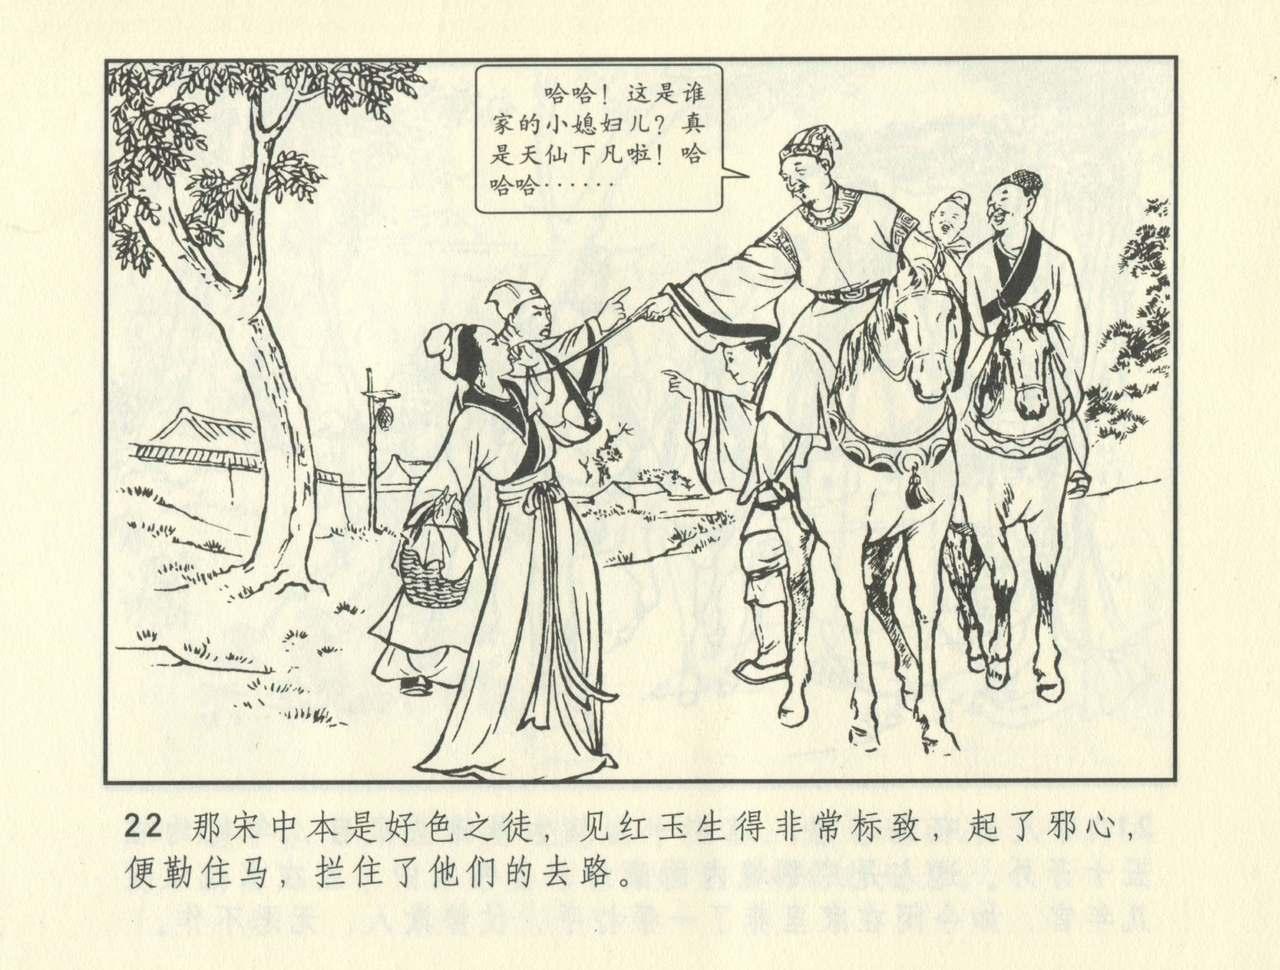 聊斋志异 张玮等绘 天津人民美术出版社 卷二十一 ~ 三十 362